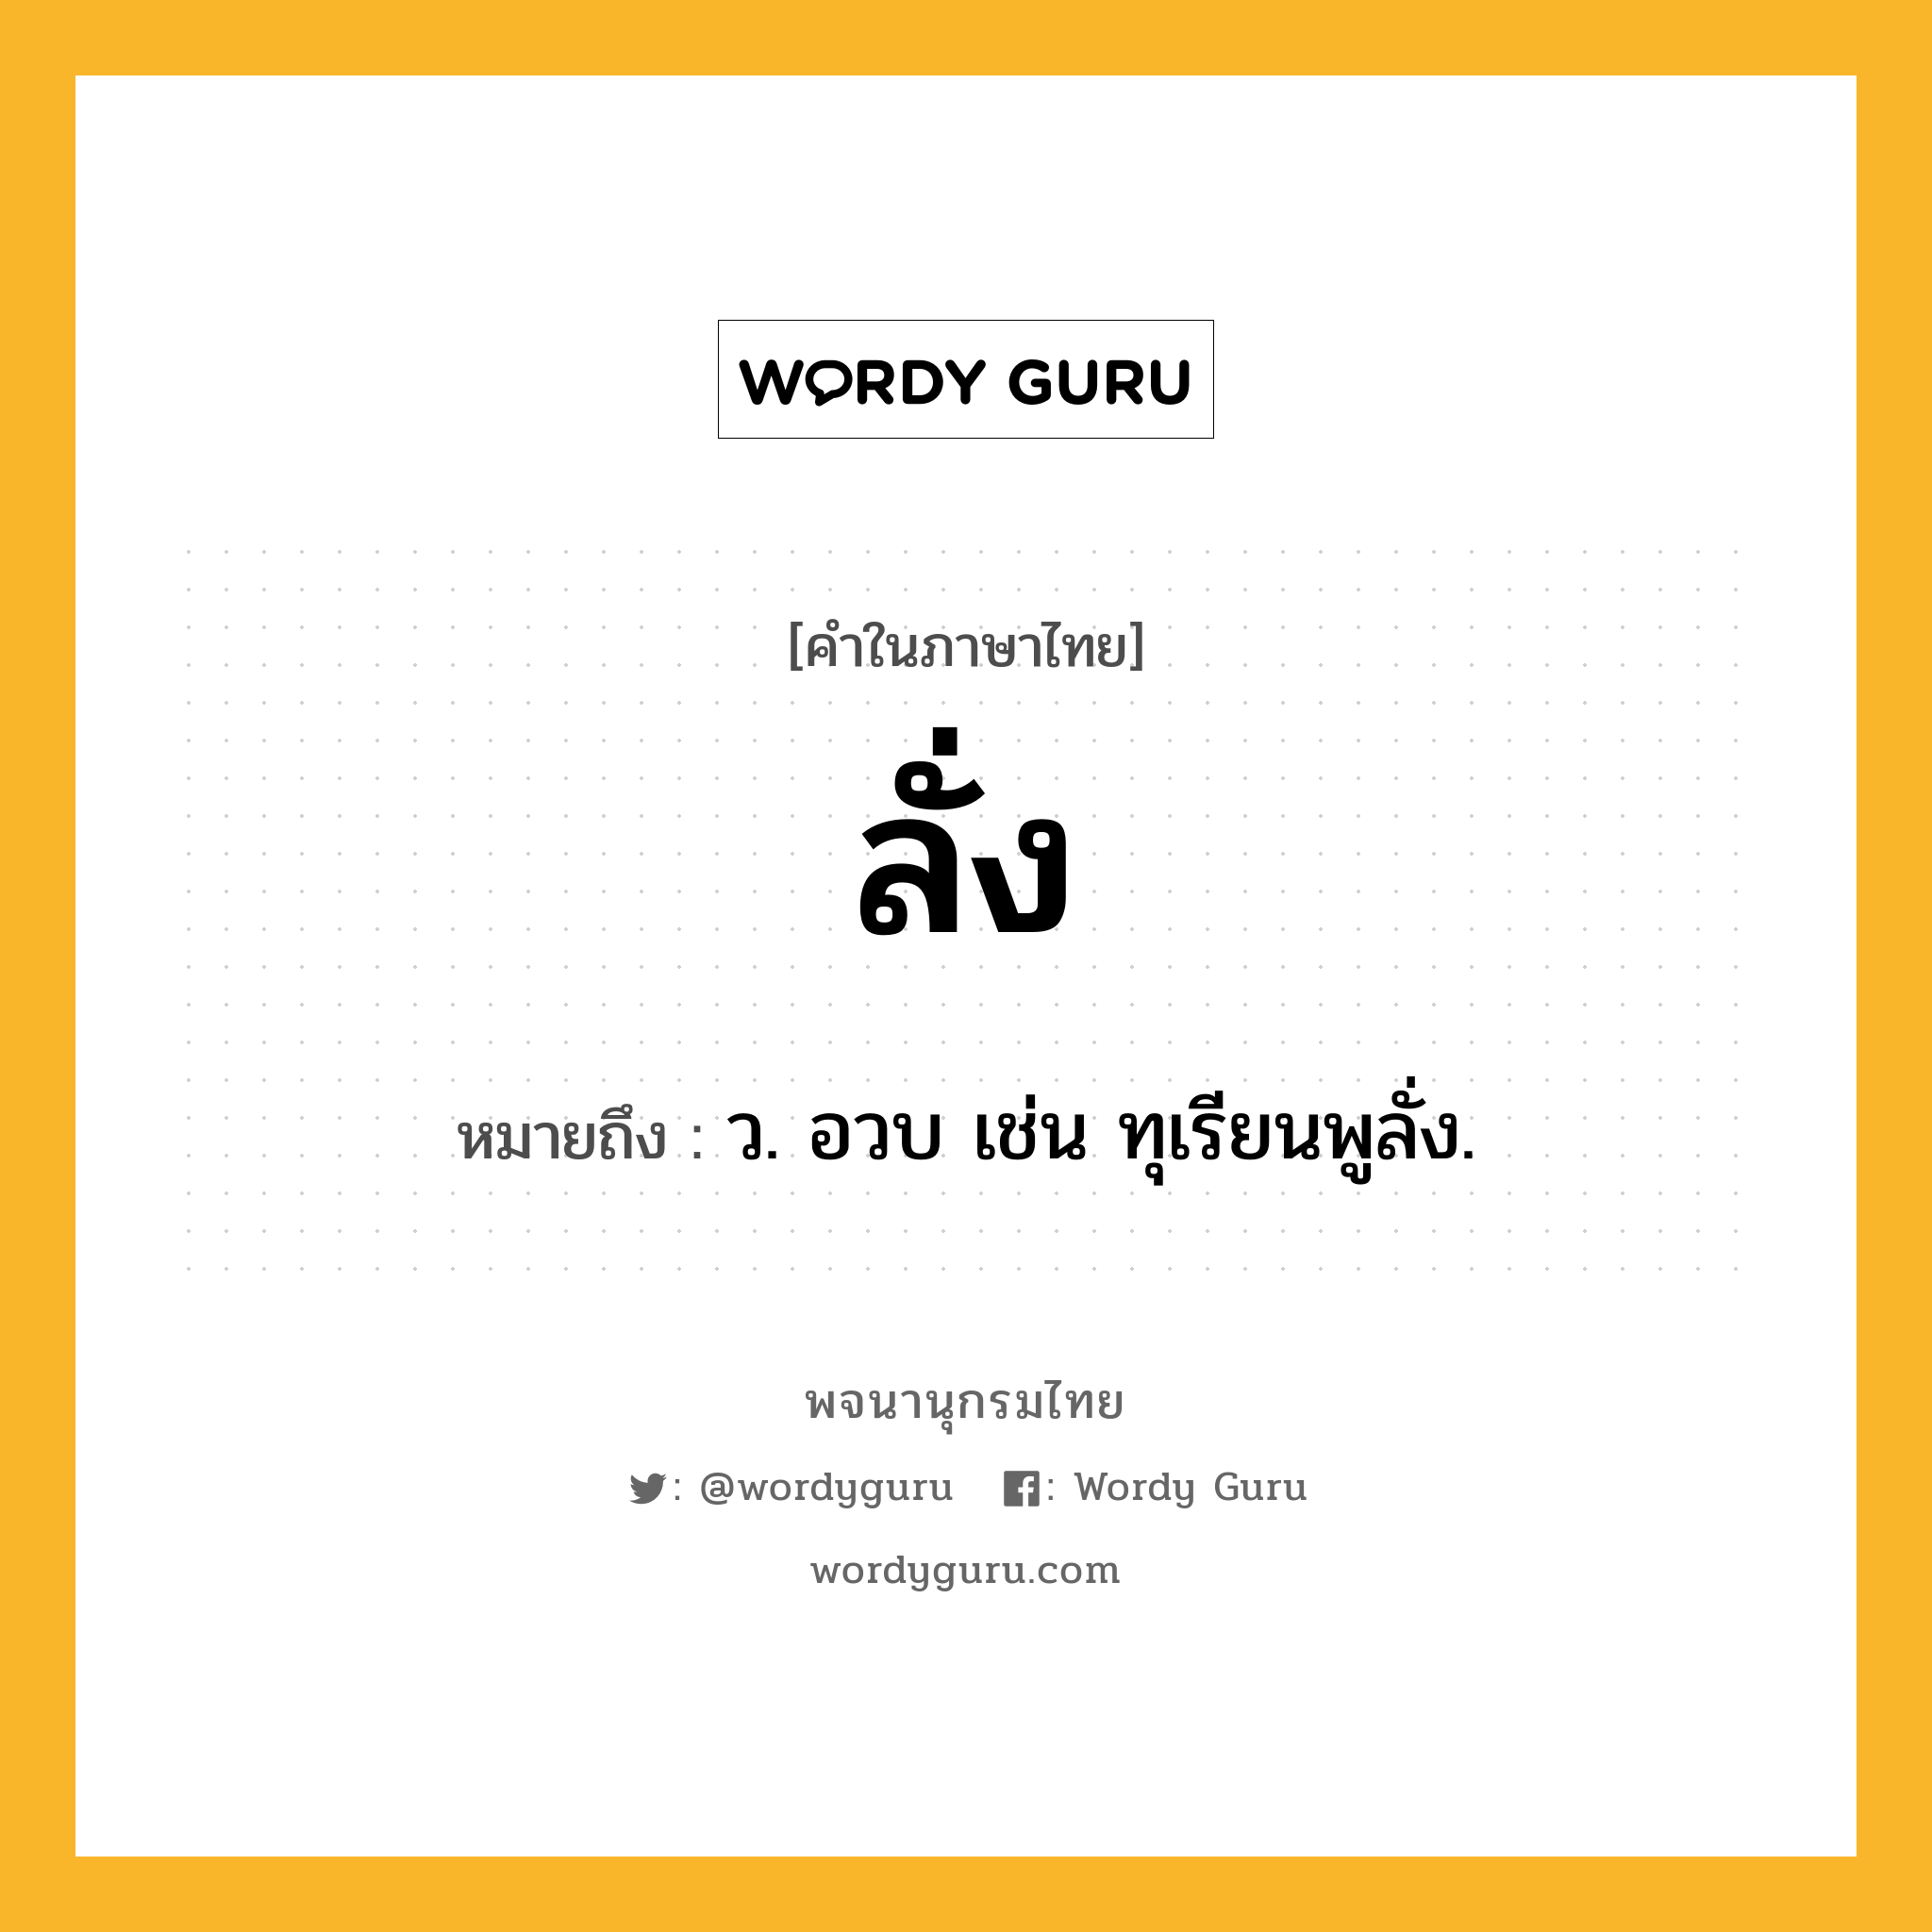 ลั่ง ความหมาย หมายถึงอะไร?, คำในภาษาไทย ลั่ง หมายถึง ว. อวบ เช่น ทุเรียนพูลั่ง.